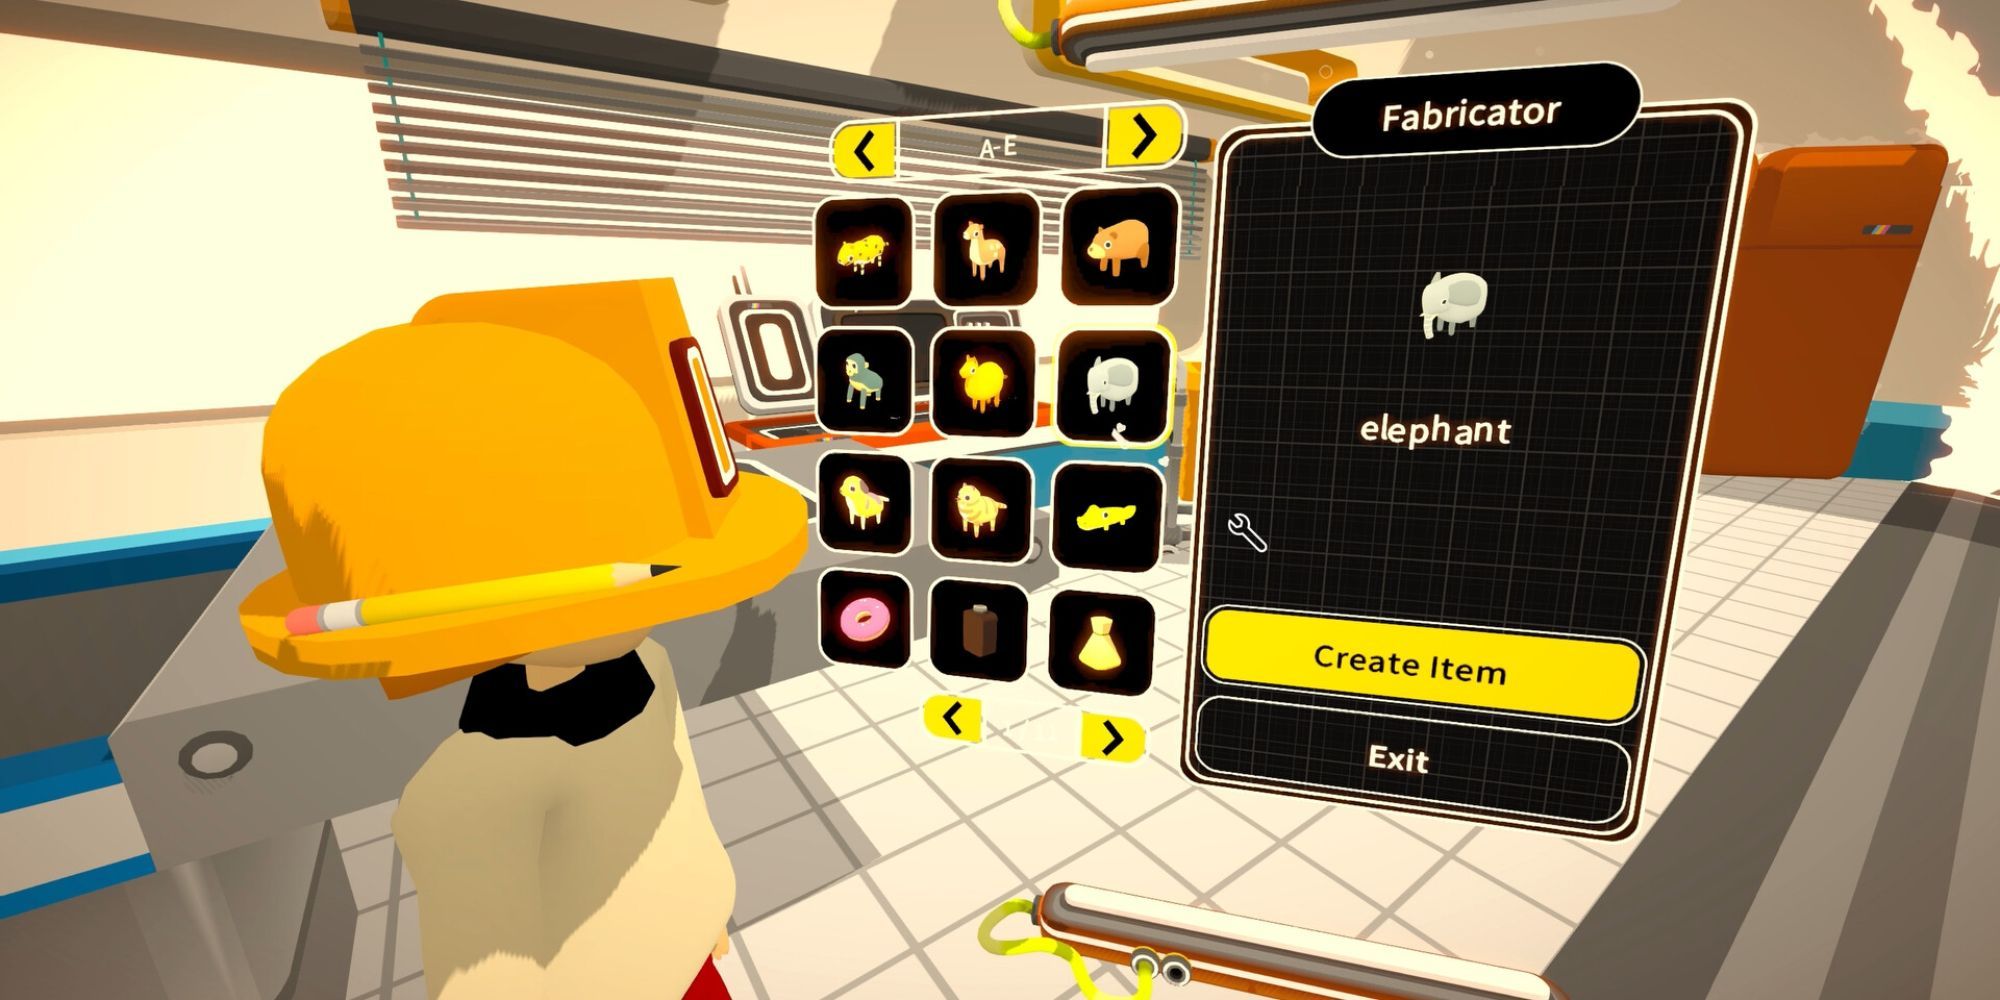 Ein Charakter mit einem orangefarbenen Helm betrachtet eine Benutzeroberfläche, die verschiedene Tiere und Objekte zeigt, die erstellt werden können.